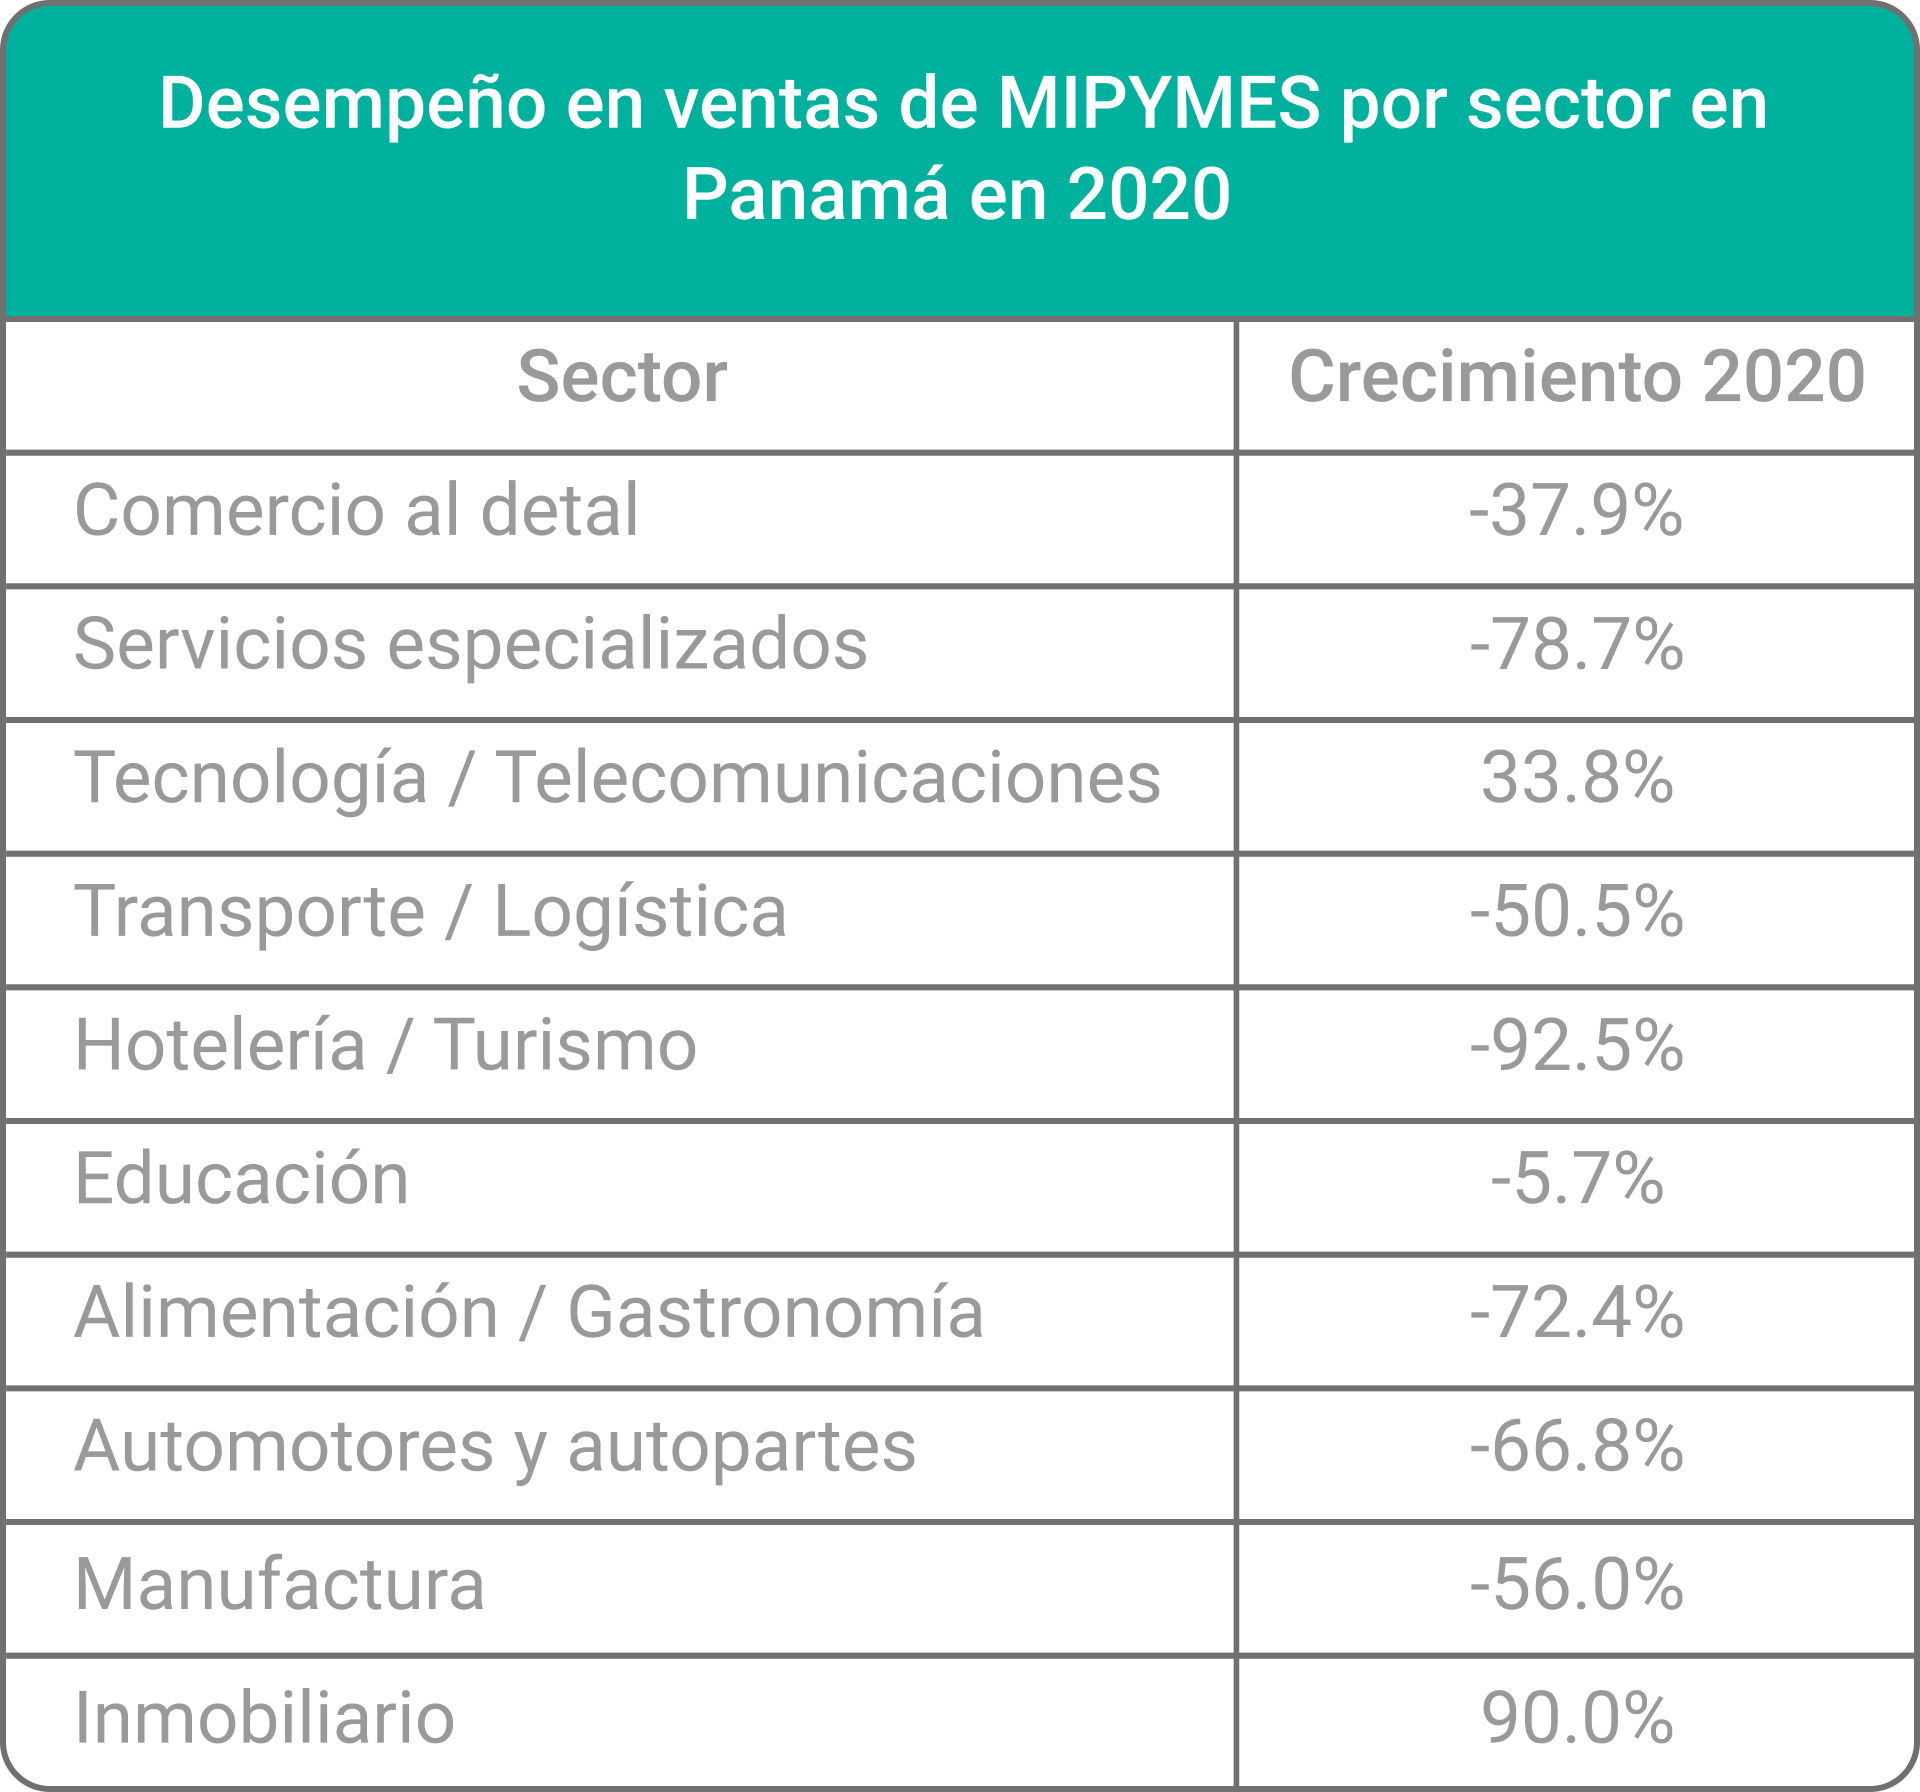 Desempeño ventas de MiPymes por sectores en Panamá